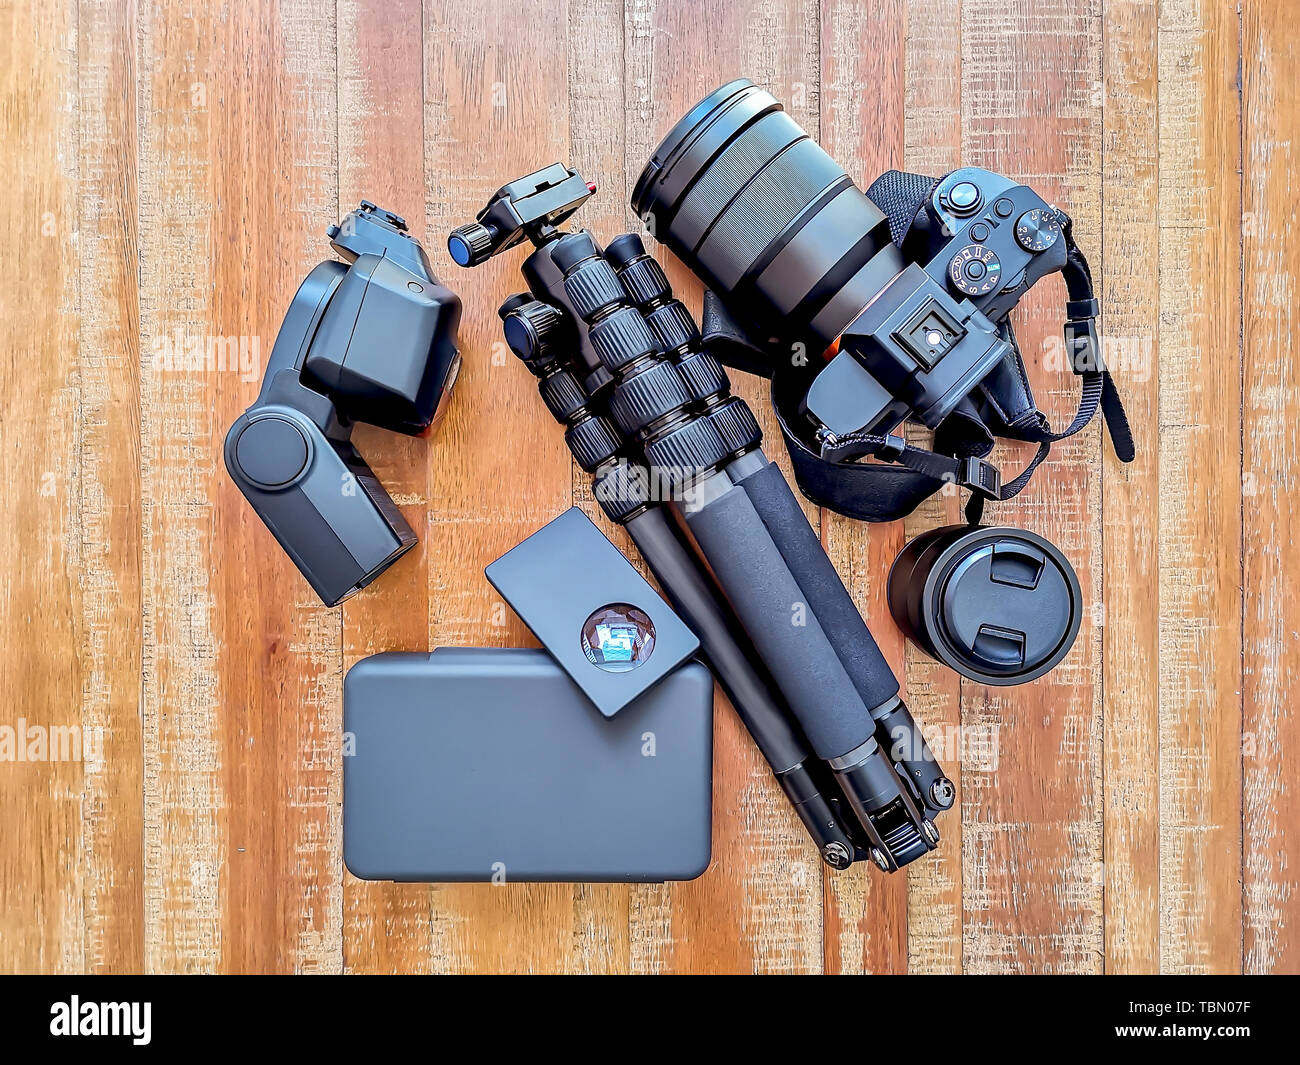 Retro Fotografie Gang, Kamera, Stativ, Blitz und Linsen an einer hölzernen  Hintergrund Stockfotografie - Alamy